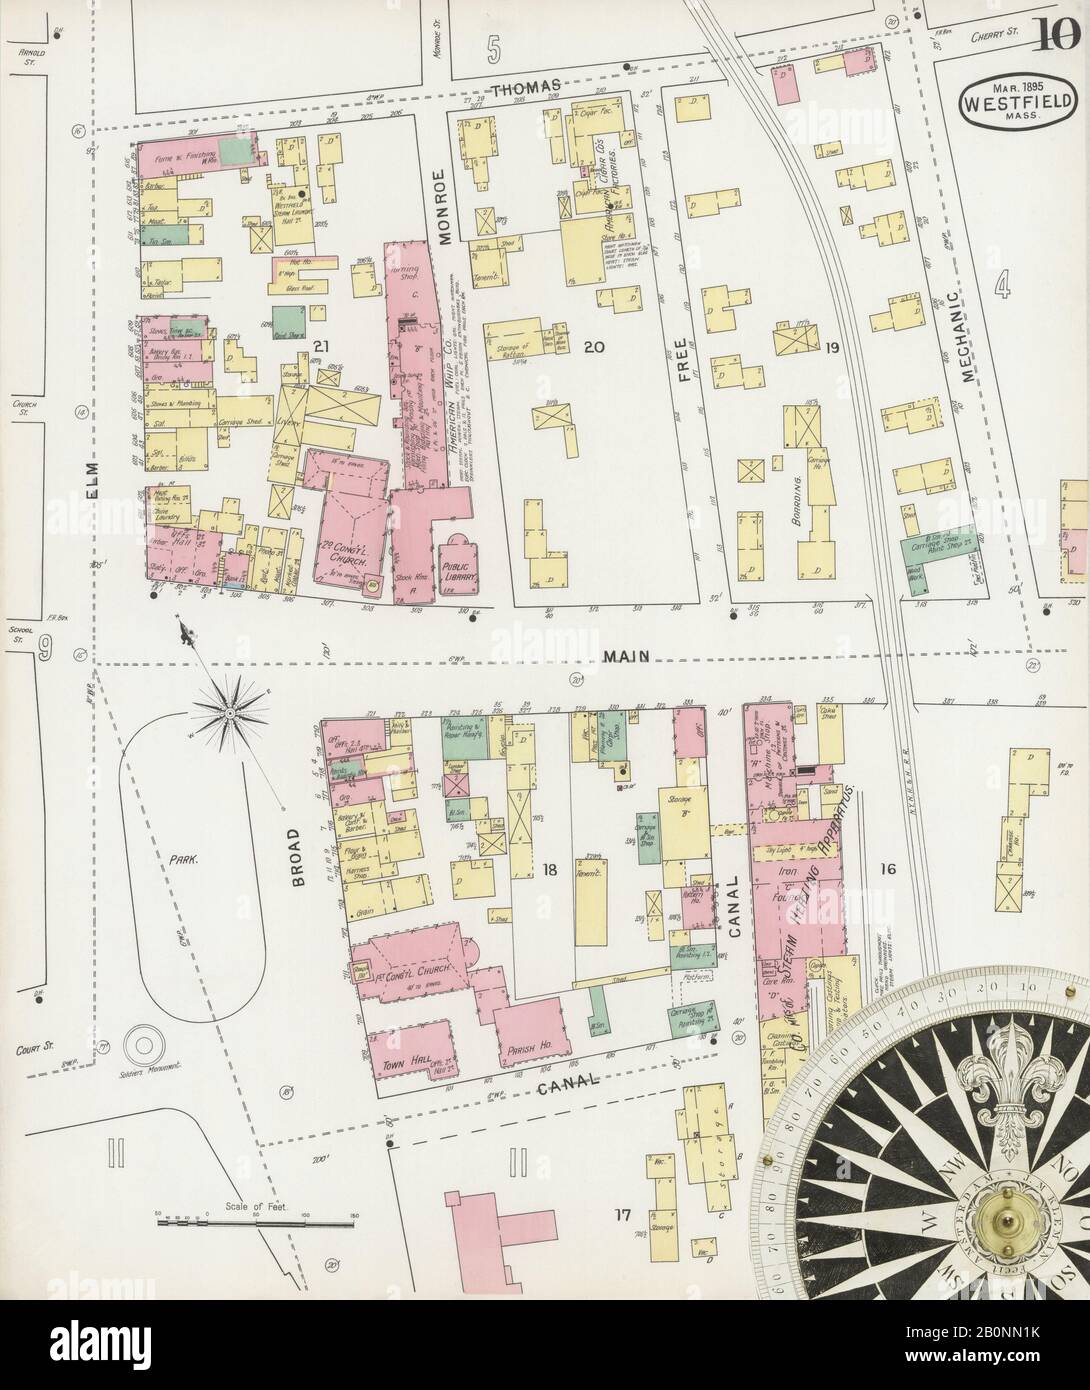 Bild 10 von Sanborn Fire Insurance Map aus Westfield, Hampden County, Massachusetts. Feb. 12 Blatt(e), Amerika, Straßenkarte mit einem Kompass Aus Dem 19. Jahrhundert Stockfoto